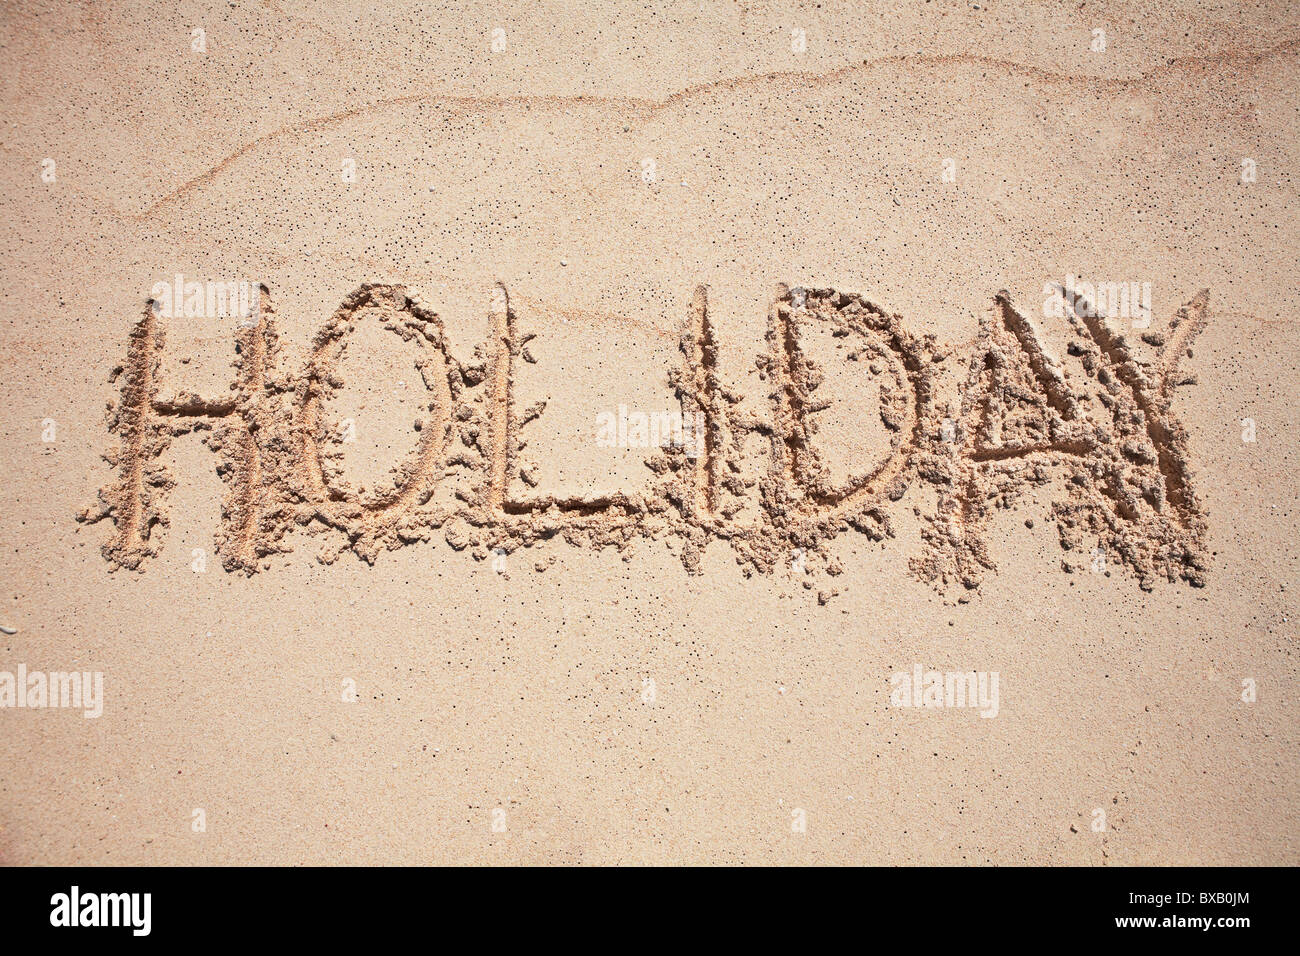 Vacaciones texto escrito sobre arena. Foto de stock